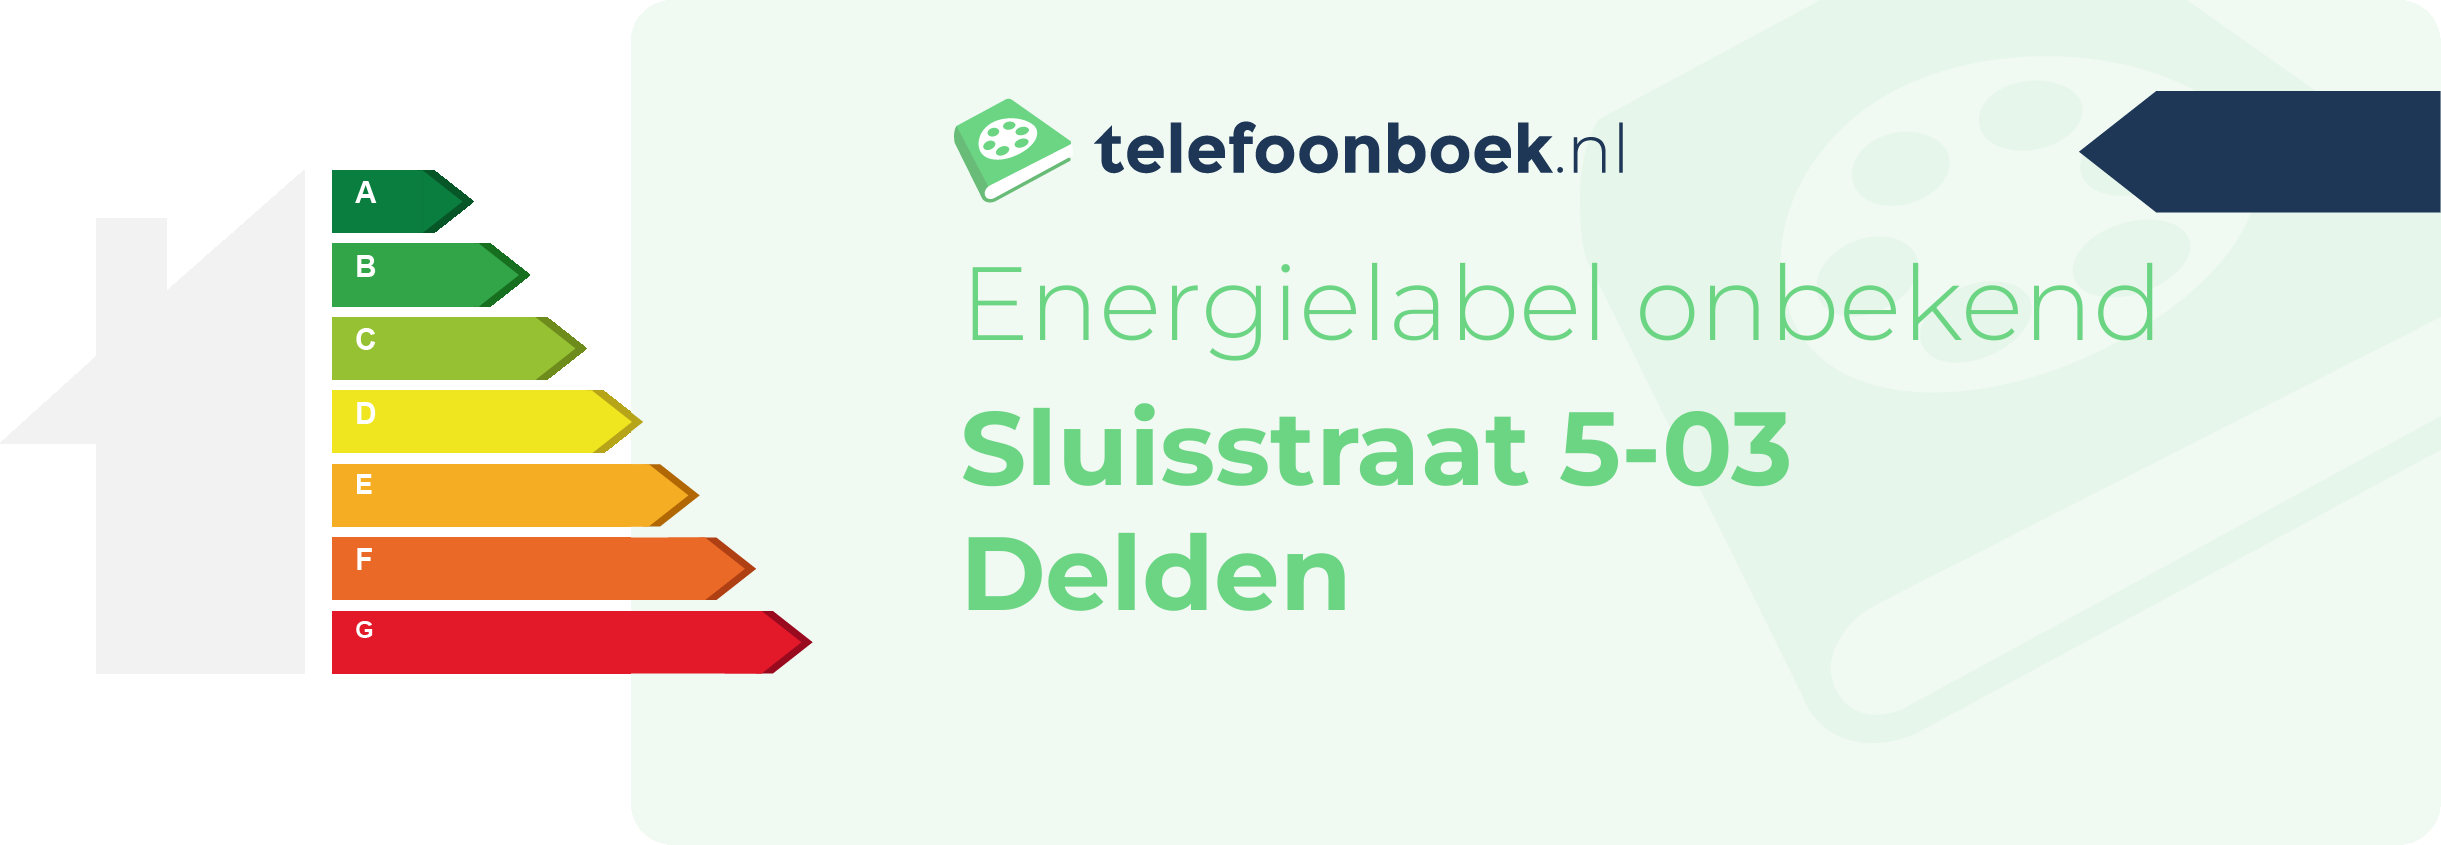 Energielabel Sluisstraat 5-03 Delden